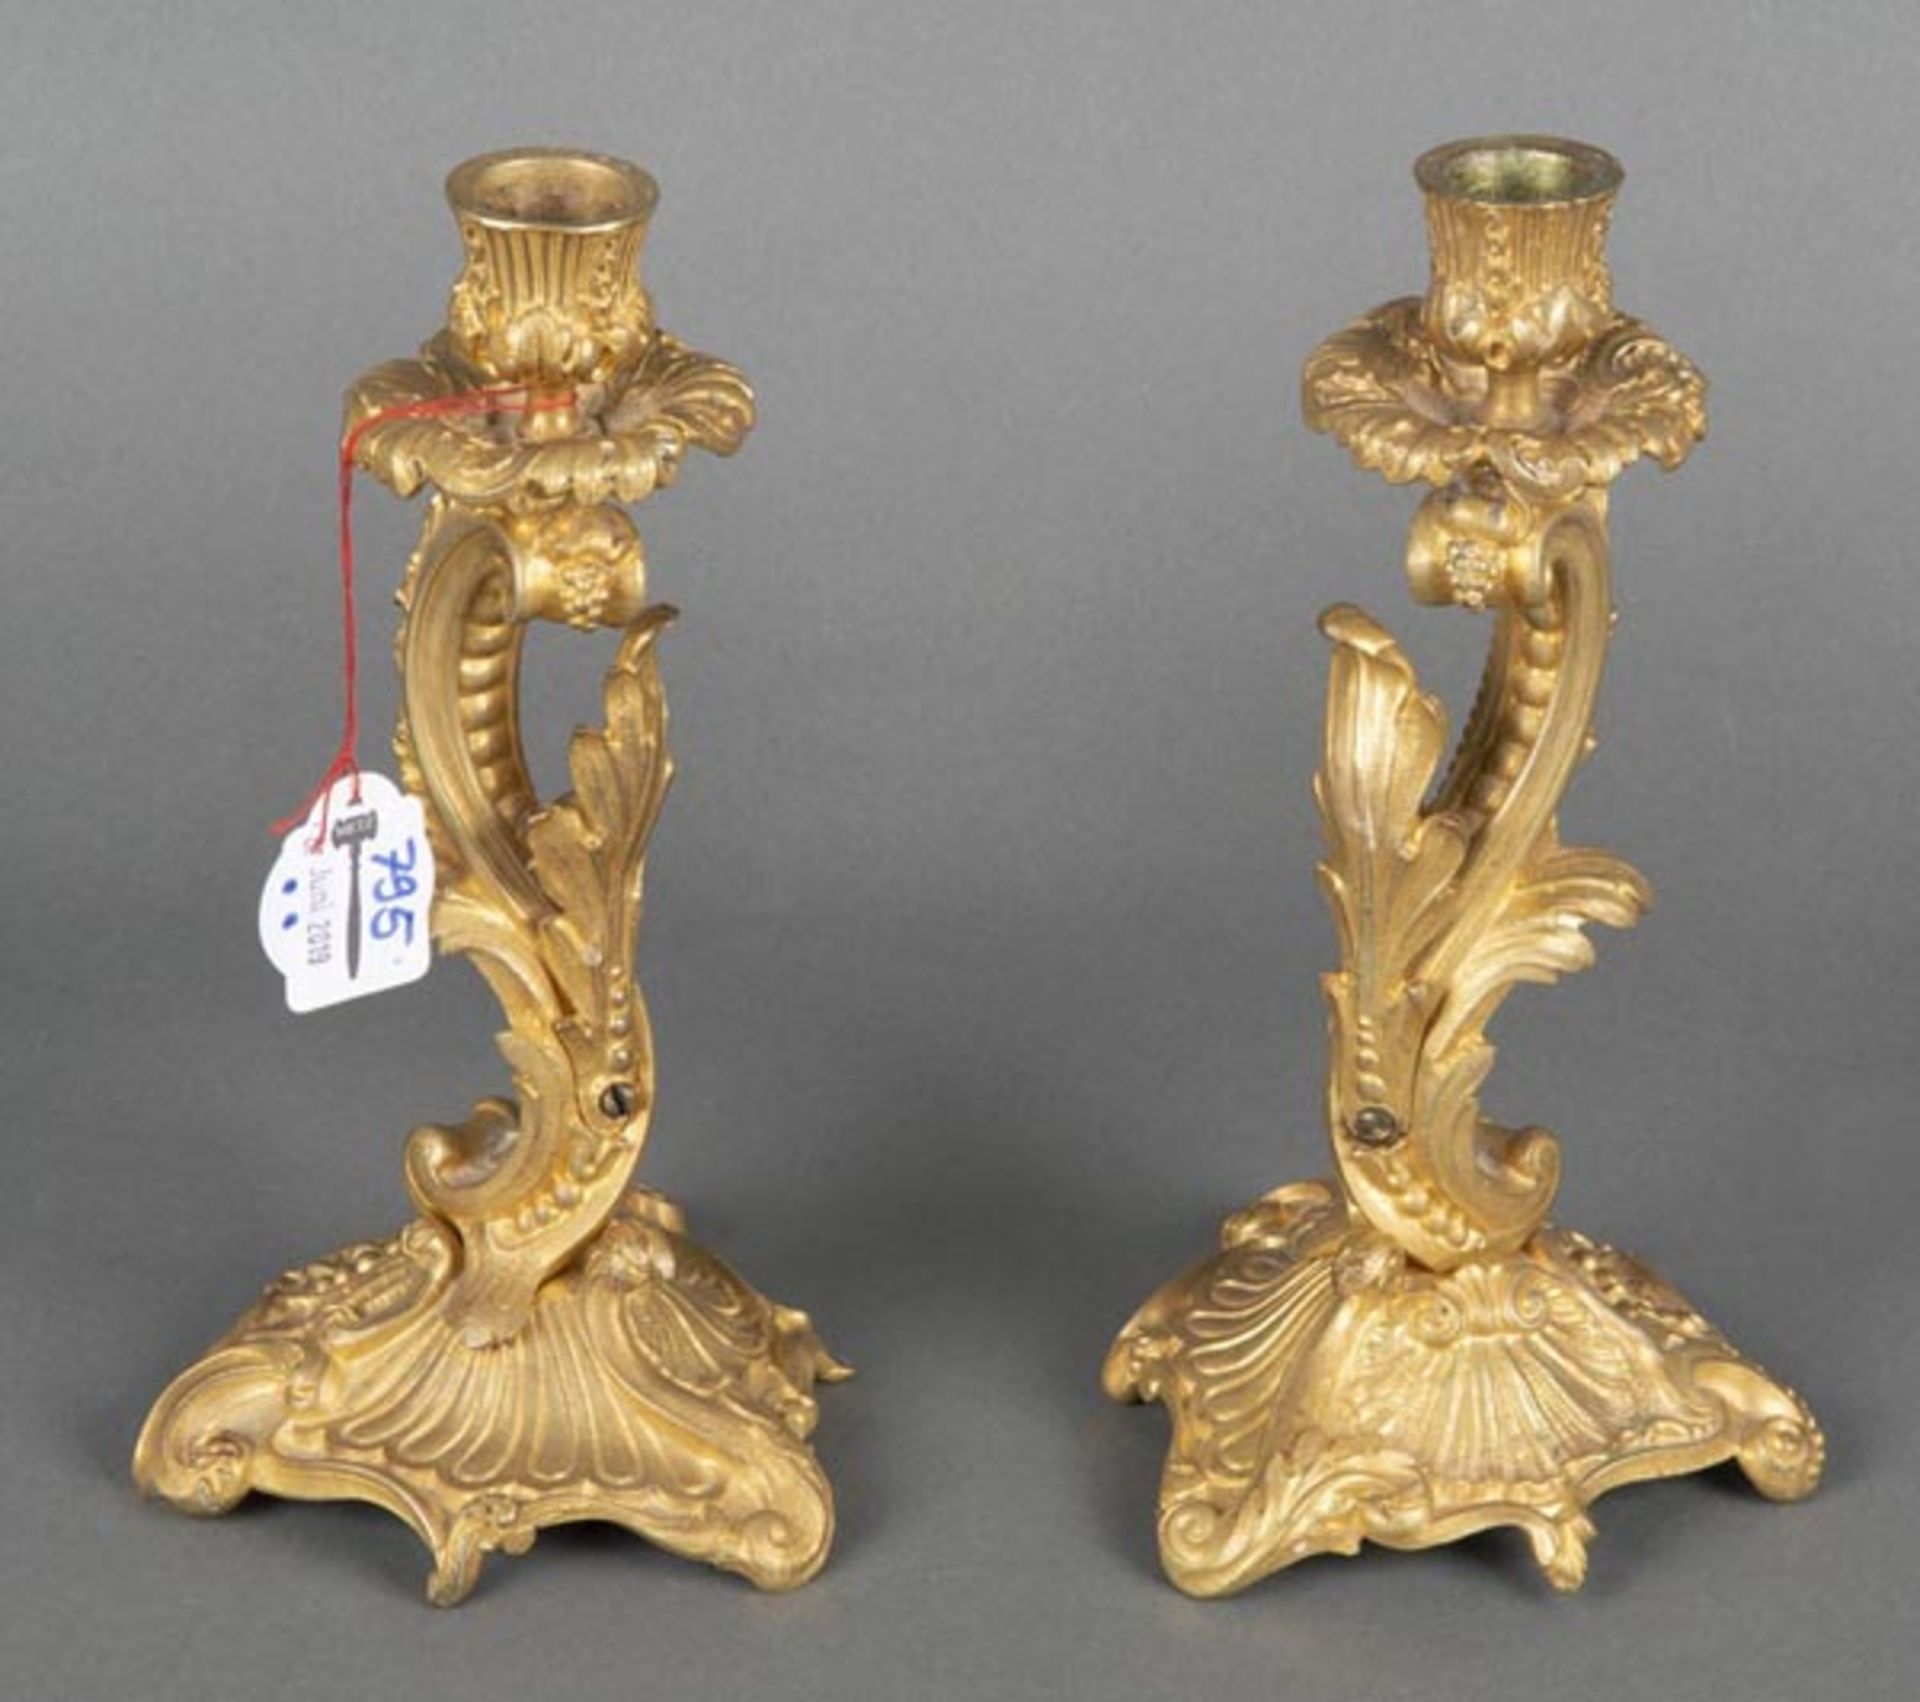 Paar Historismus-Kerzenleuchter. Deutsch 19. Jh. Bronze, vergoldet, H=22 cm.